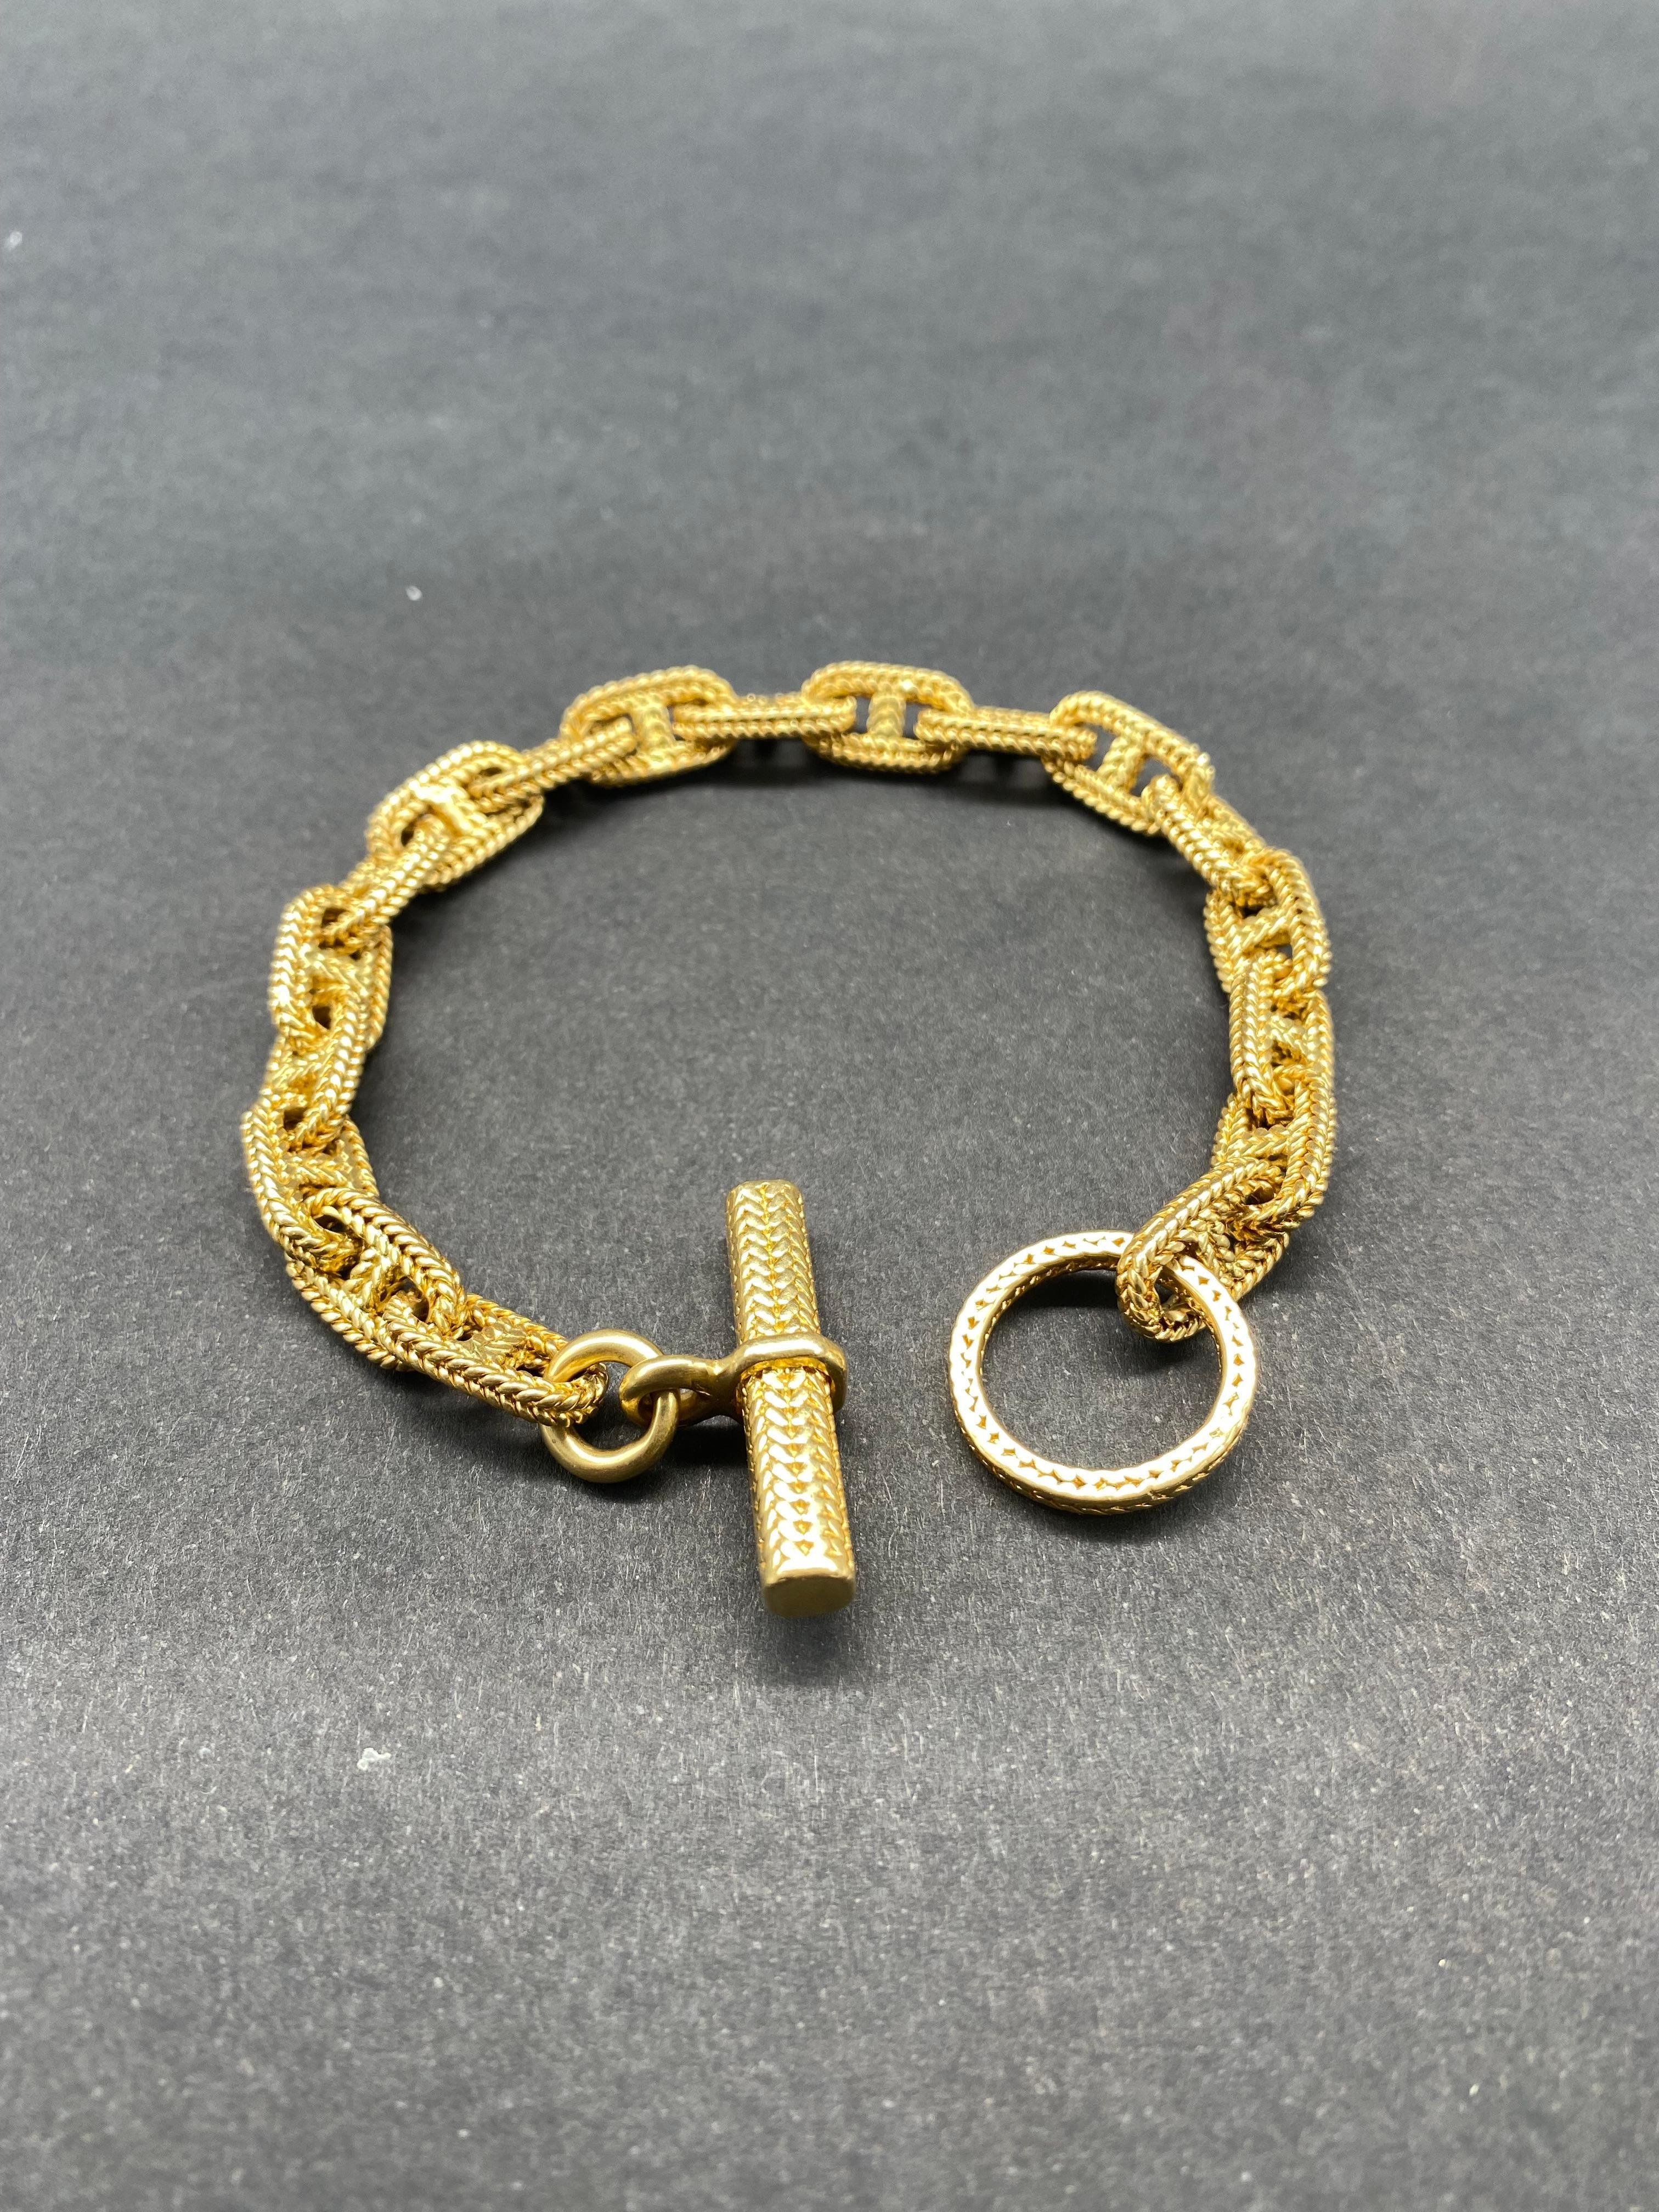 Modernist Hermes Bracelet by Georges Lenfant  Solid Yellow Gold 18 Karat  